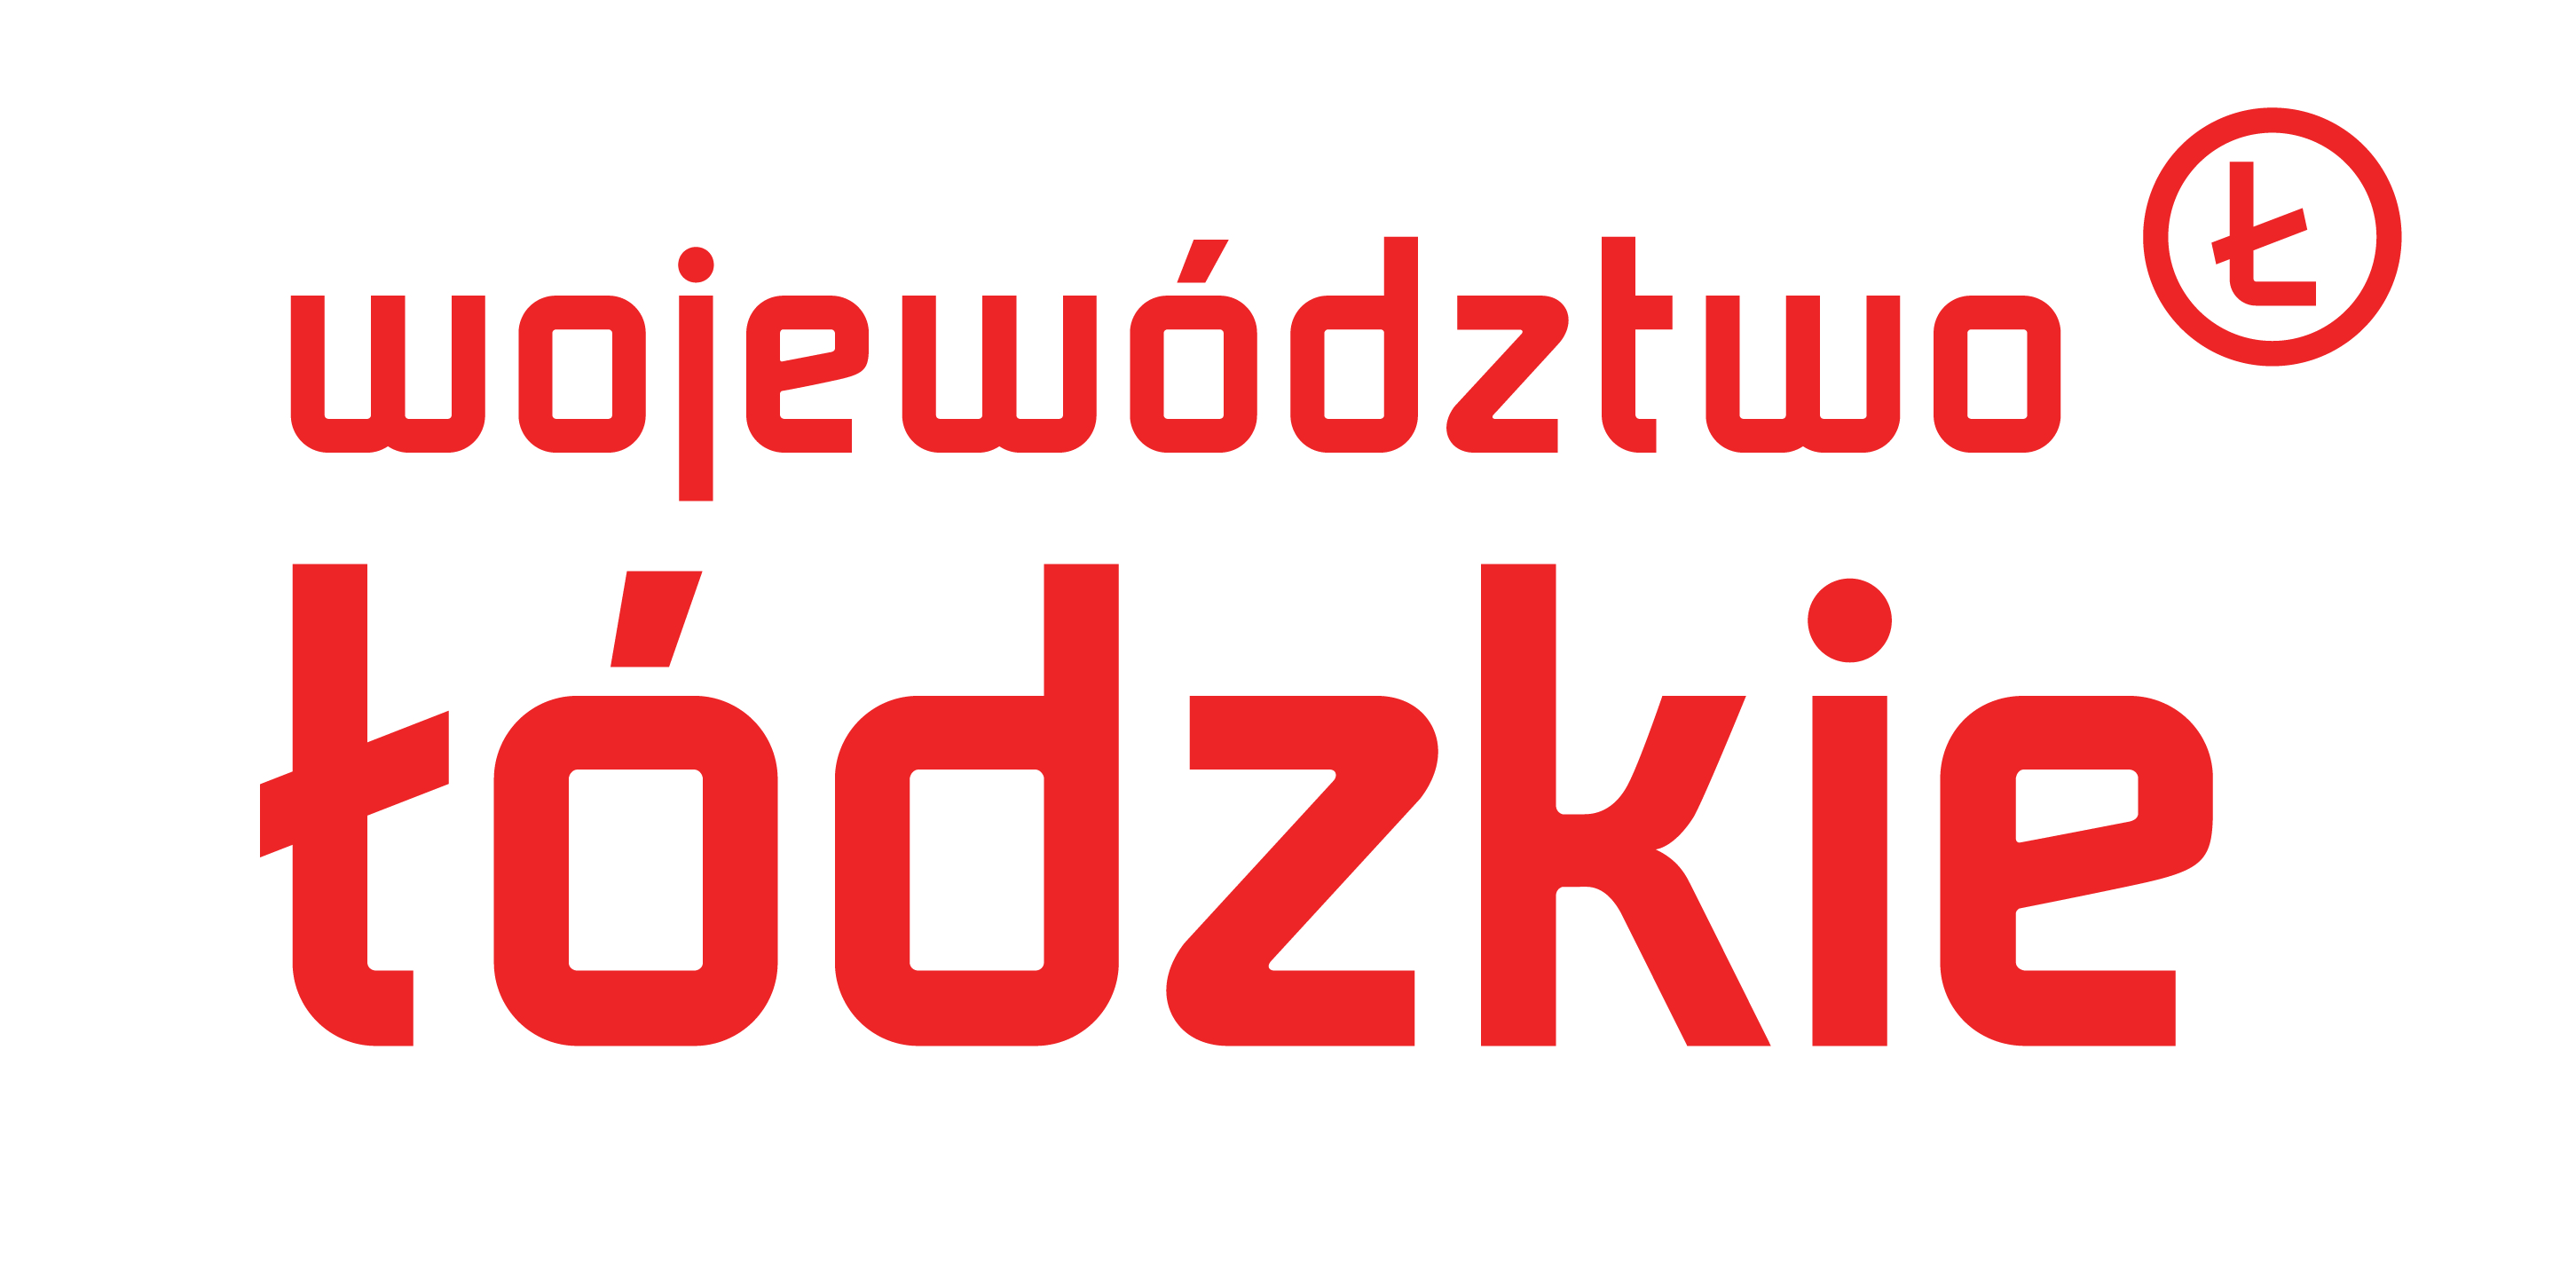 Województwo Łódzkie